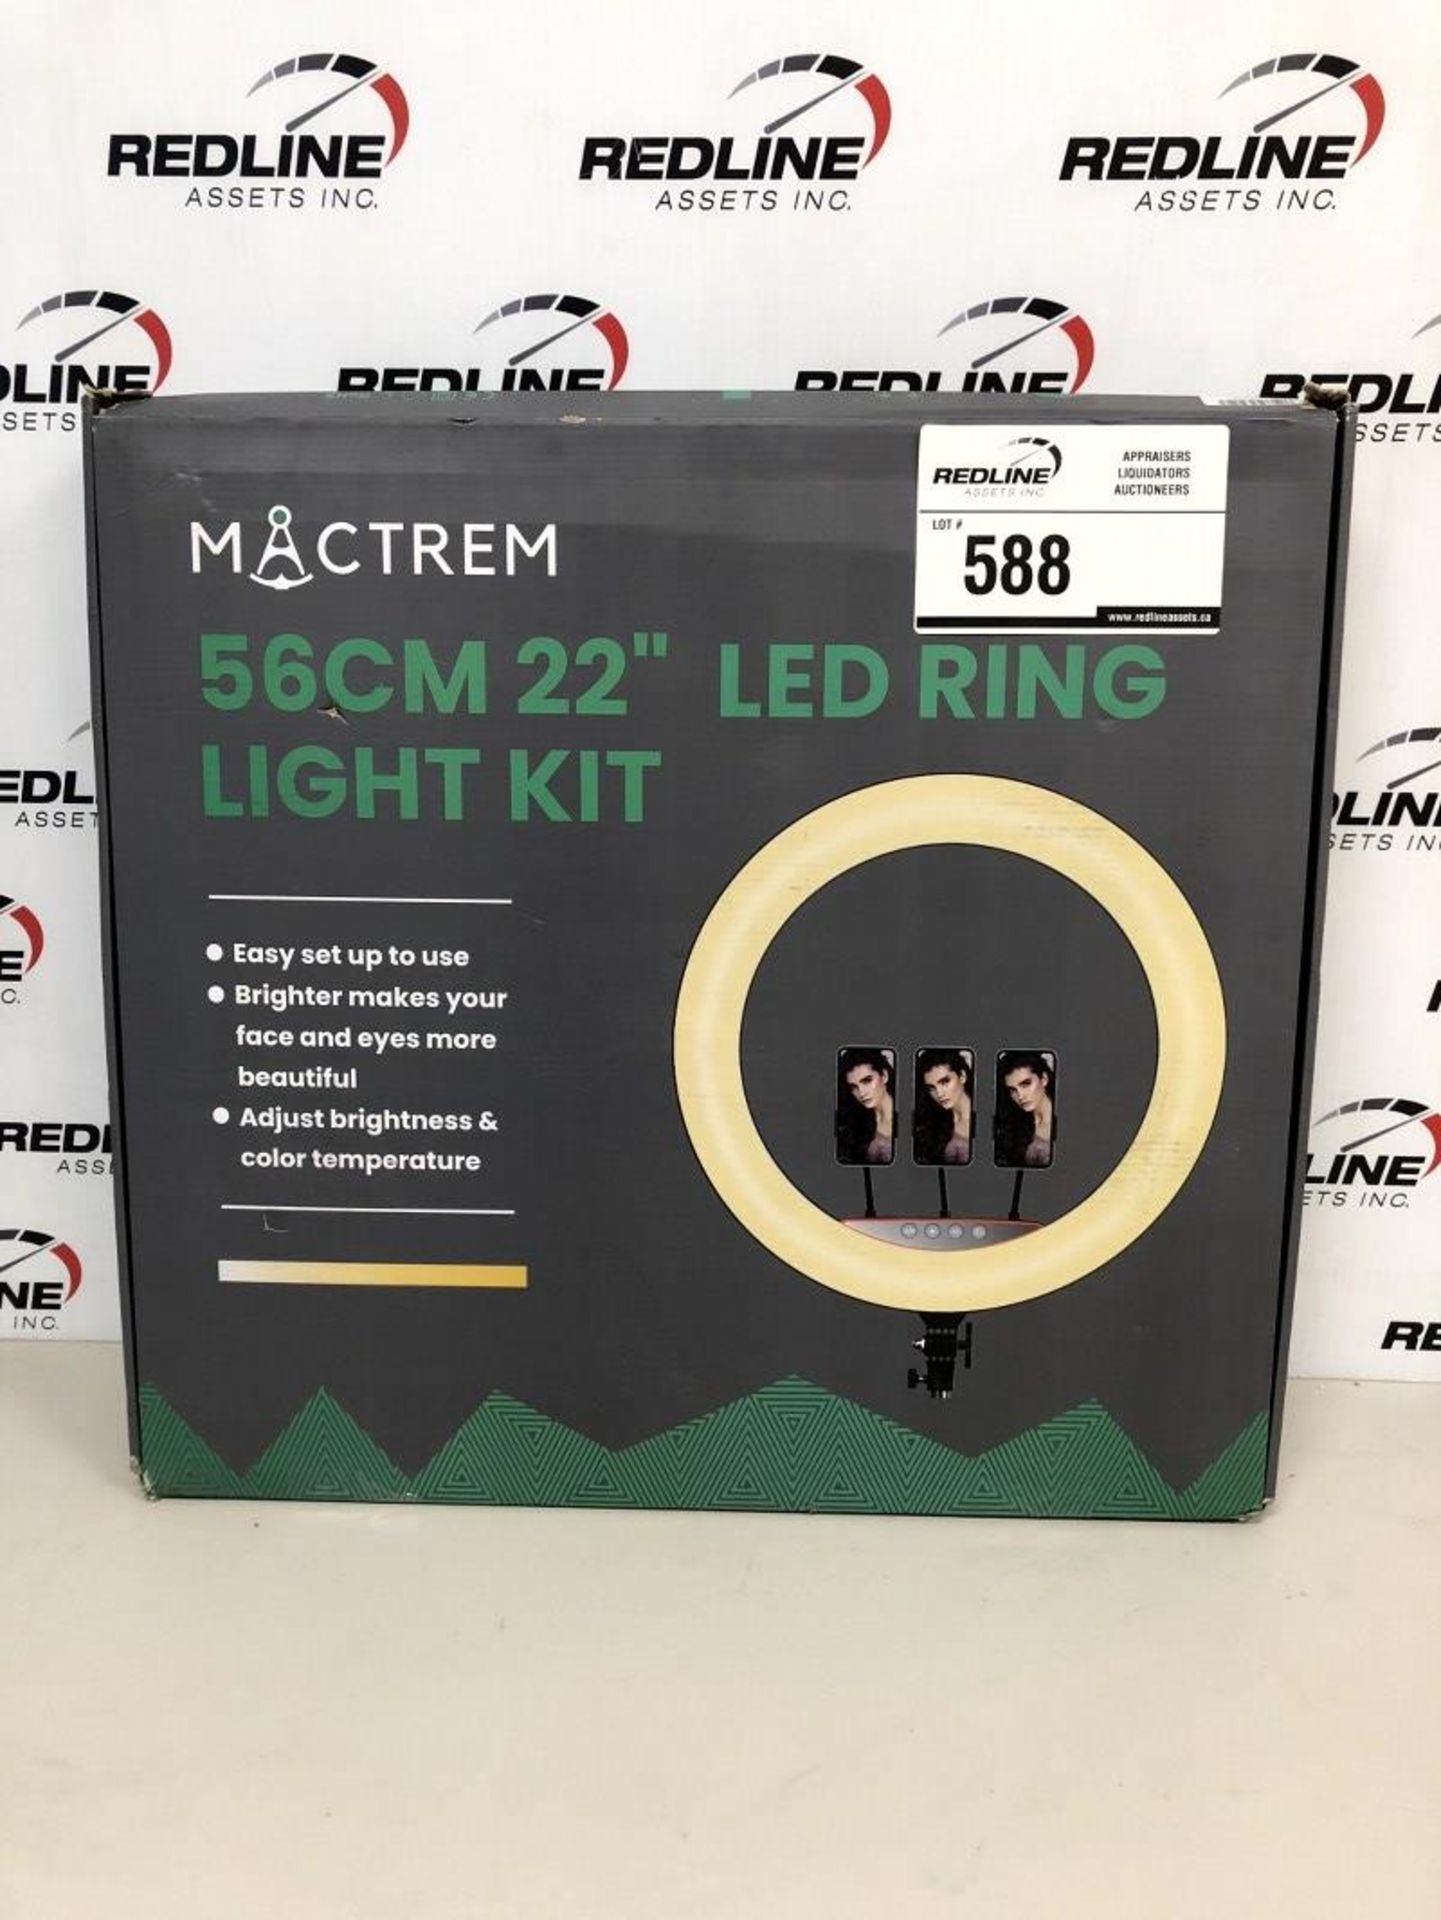 Mactrem - 56Cm 22" Led Ring Light Kit